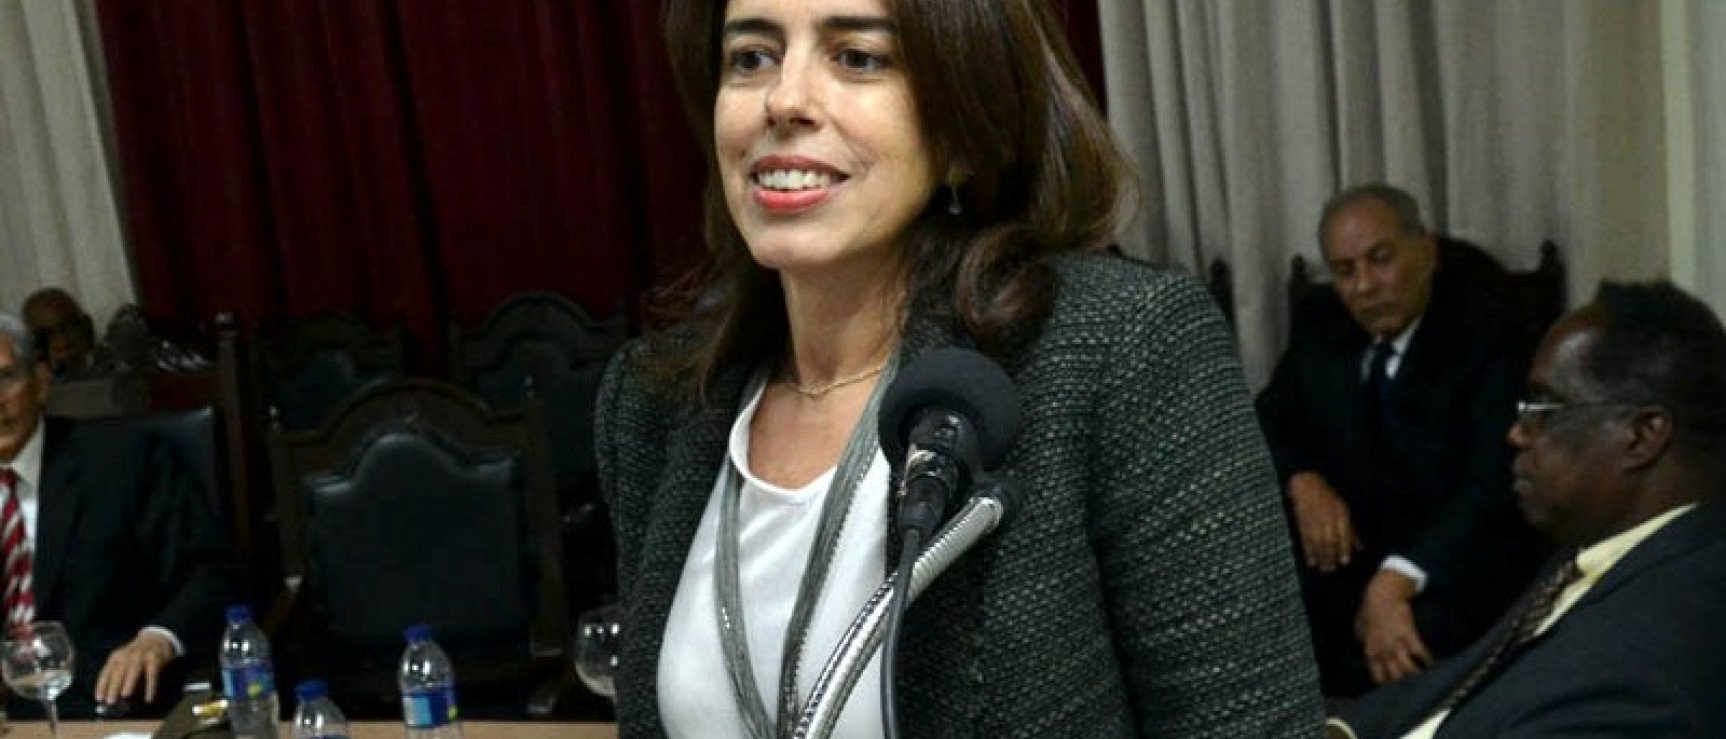 María José Rincón, miembro de la Academia Dominicana de la Lengua y coordinadora del taller de lectura. Foto: Acento.com.do